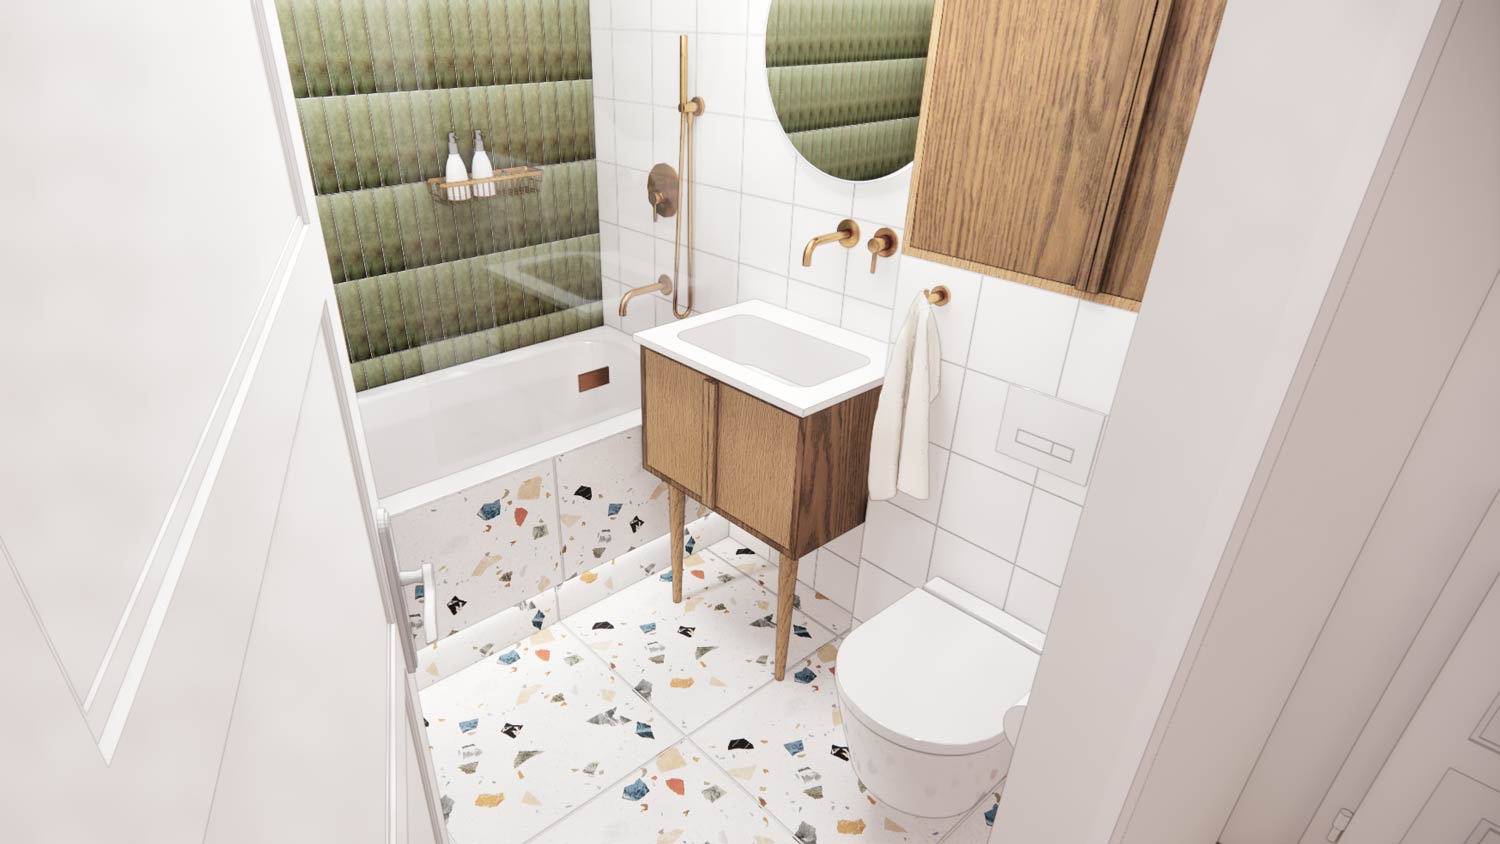 Wizualizacja wnętrza łazienki z płytkami lastryko, złotem i butelkową zielenią